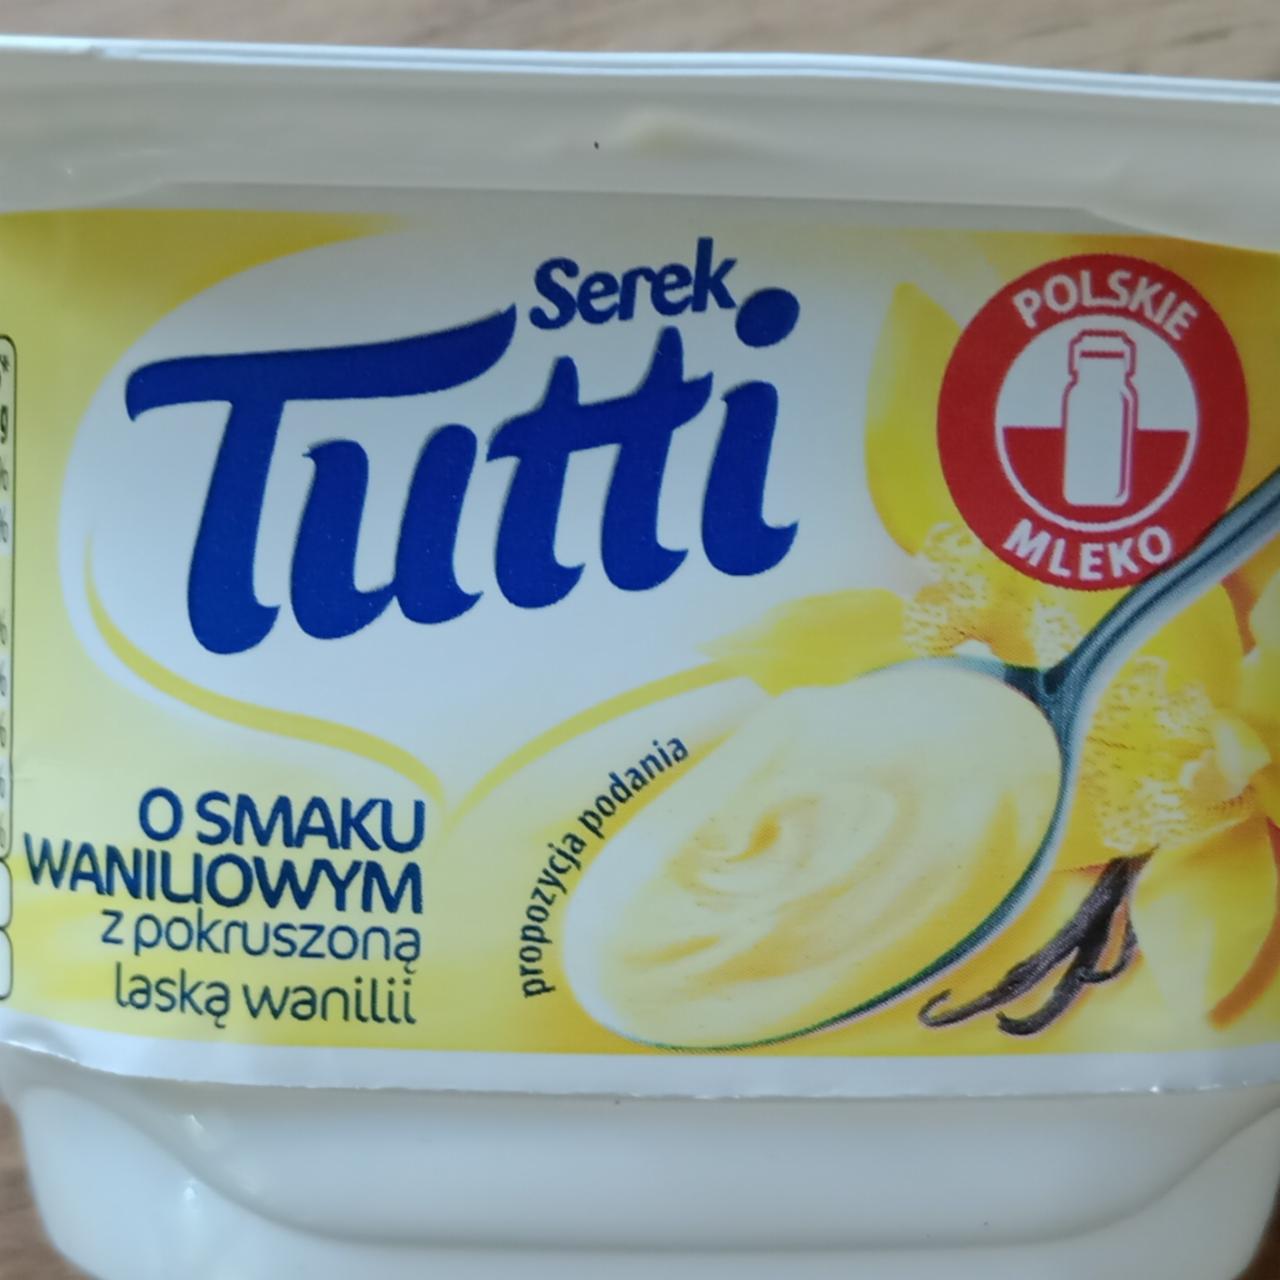 Фото - Serek o smaku waniliowym z pokruszoną laską wanilii Tutti